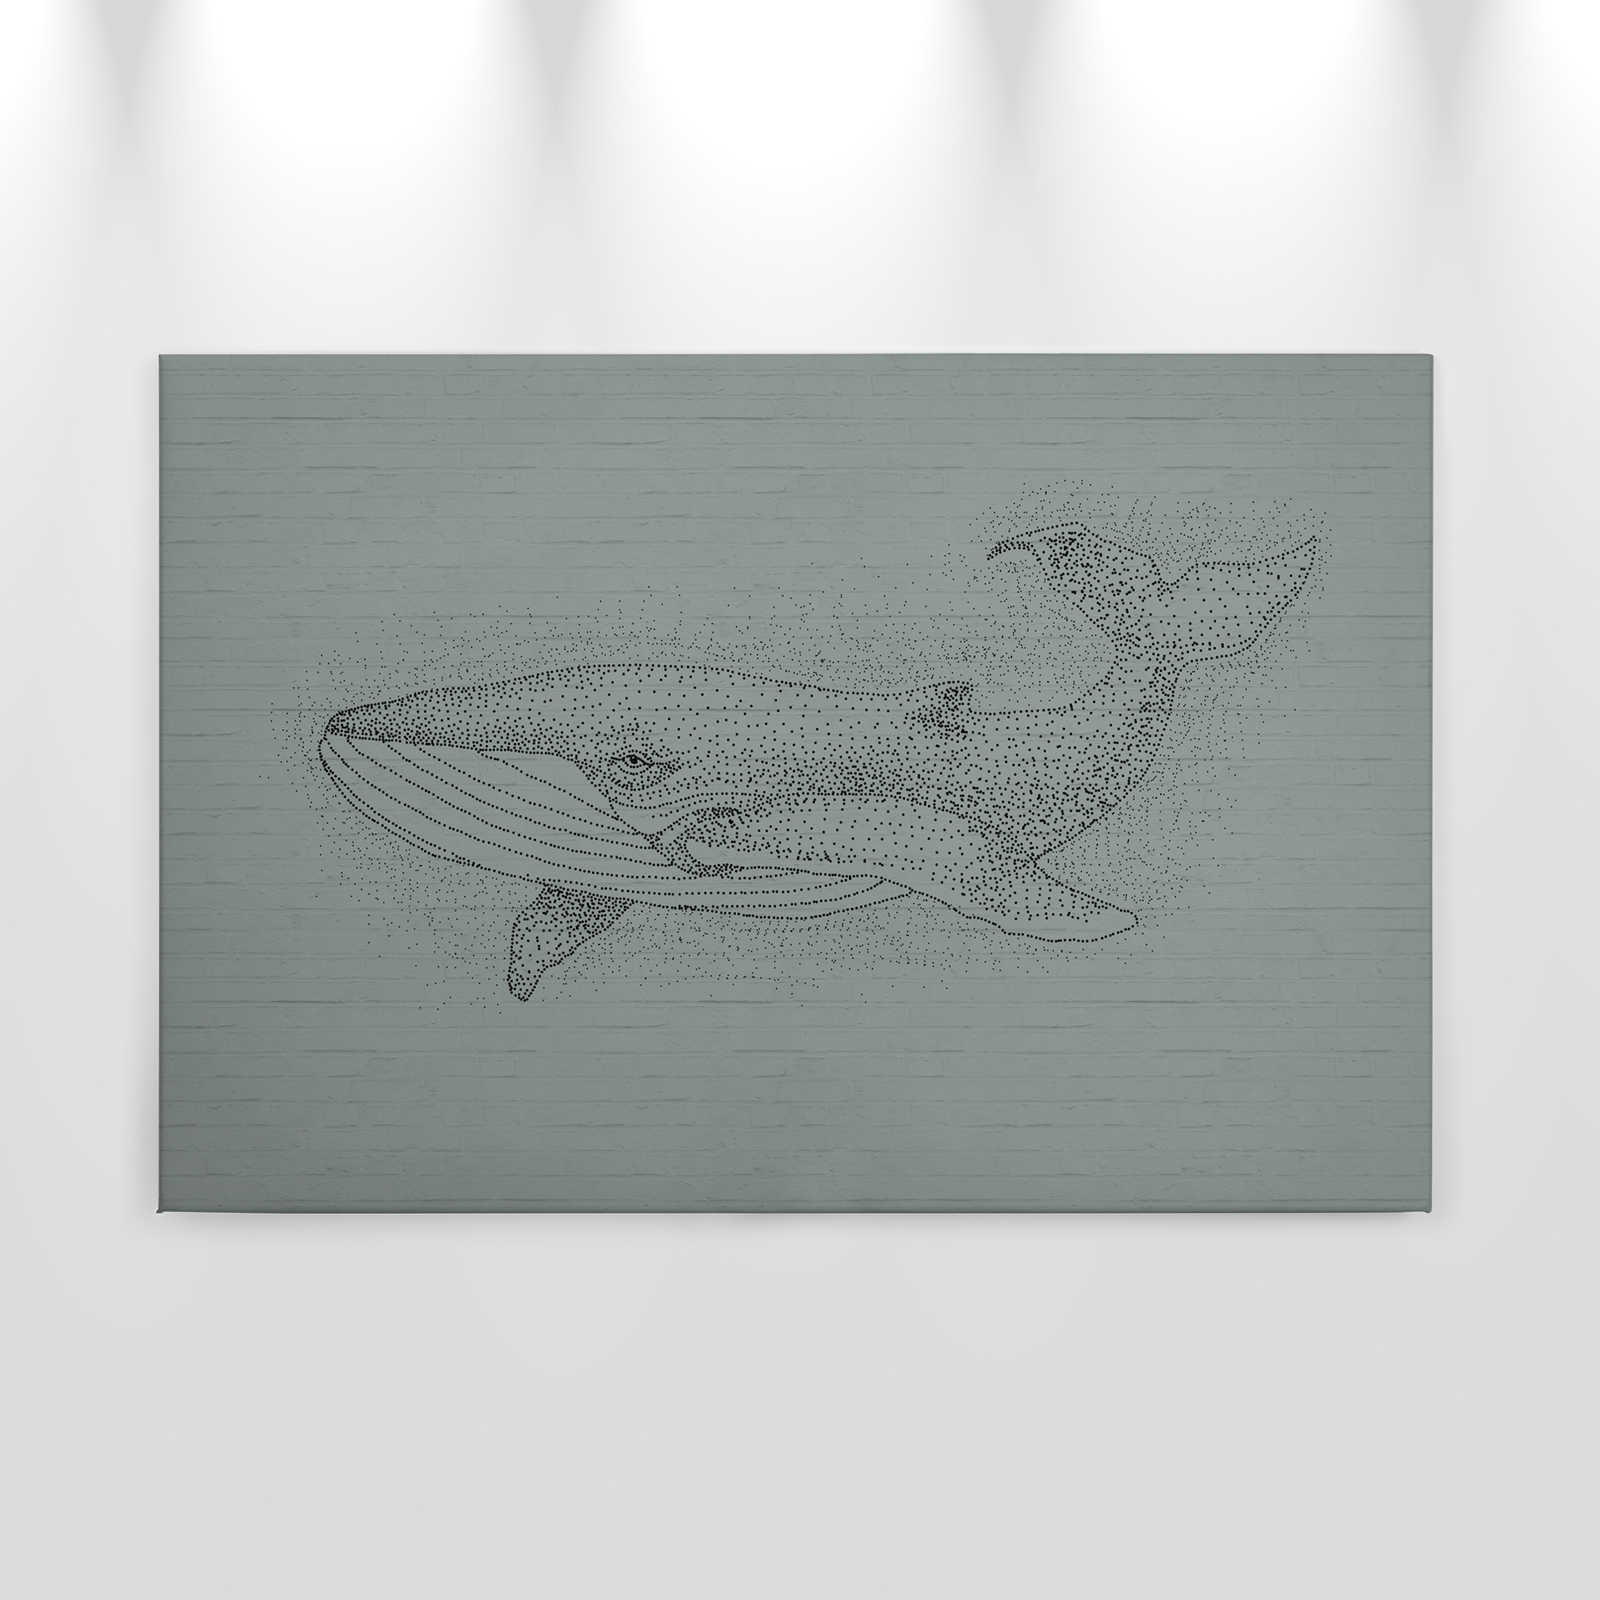             Mur de pierre toile avec motif de baleine en style de dessin - 0,90 m x 0,60 m
        